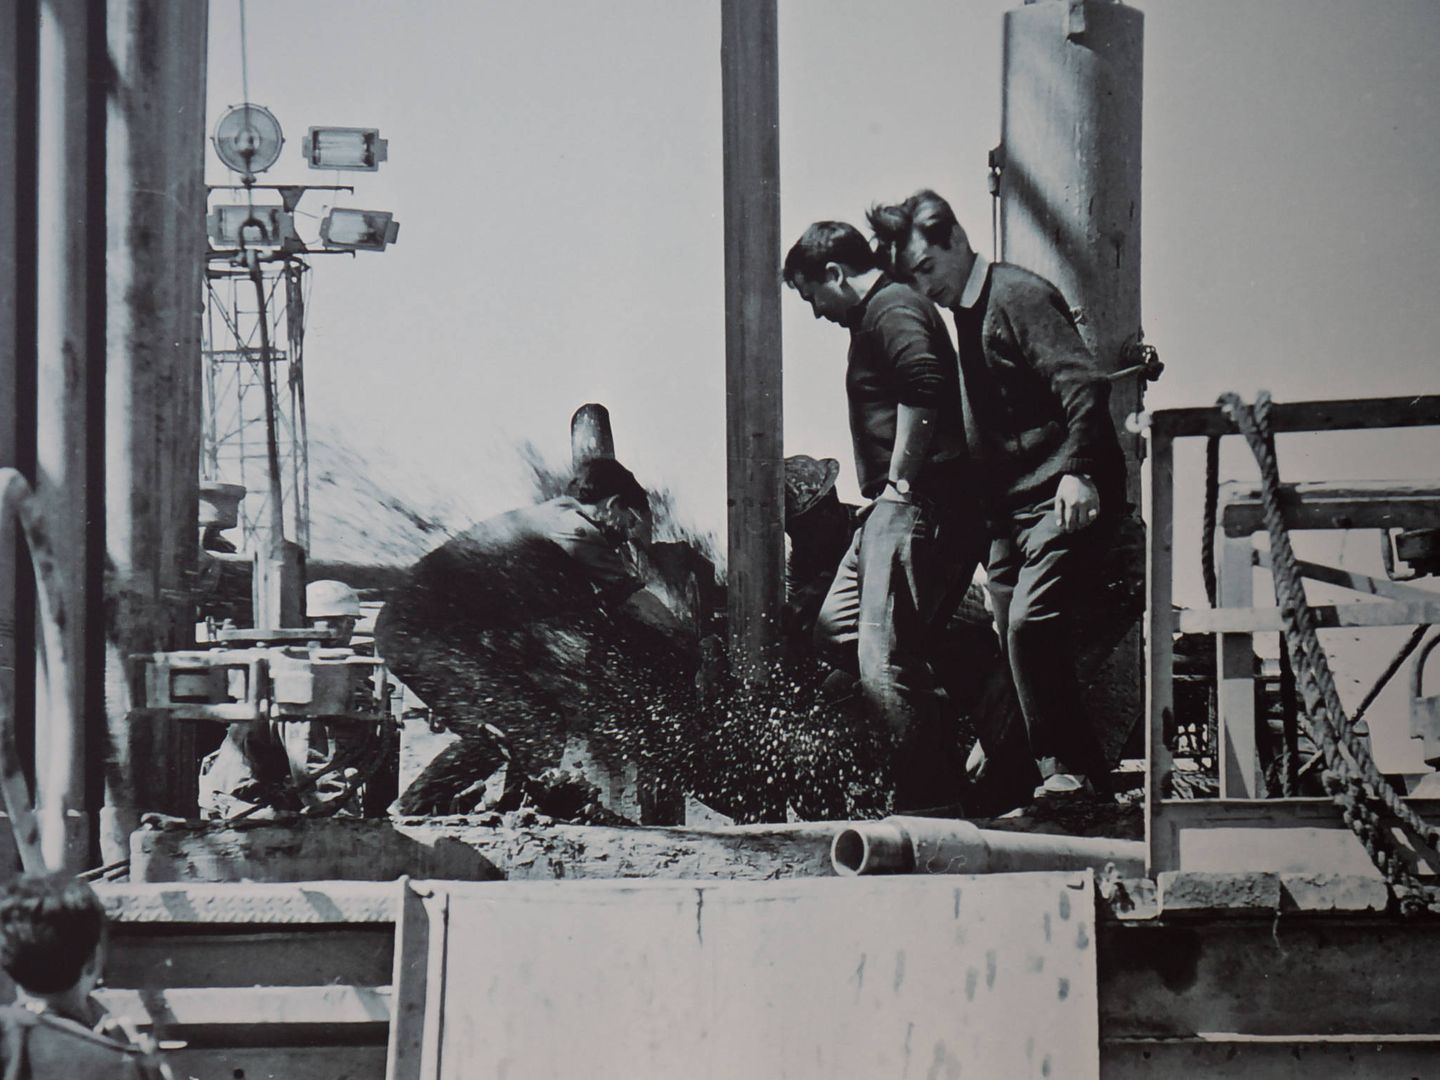 Petróleo saliendo a borbotones de un pozo en los años 60.